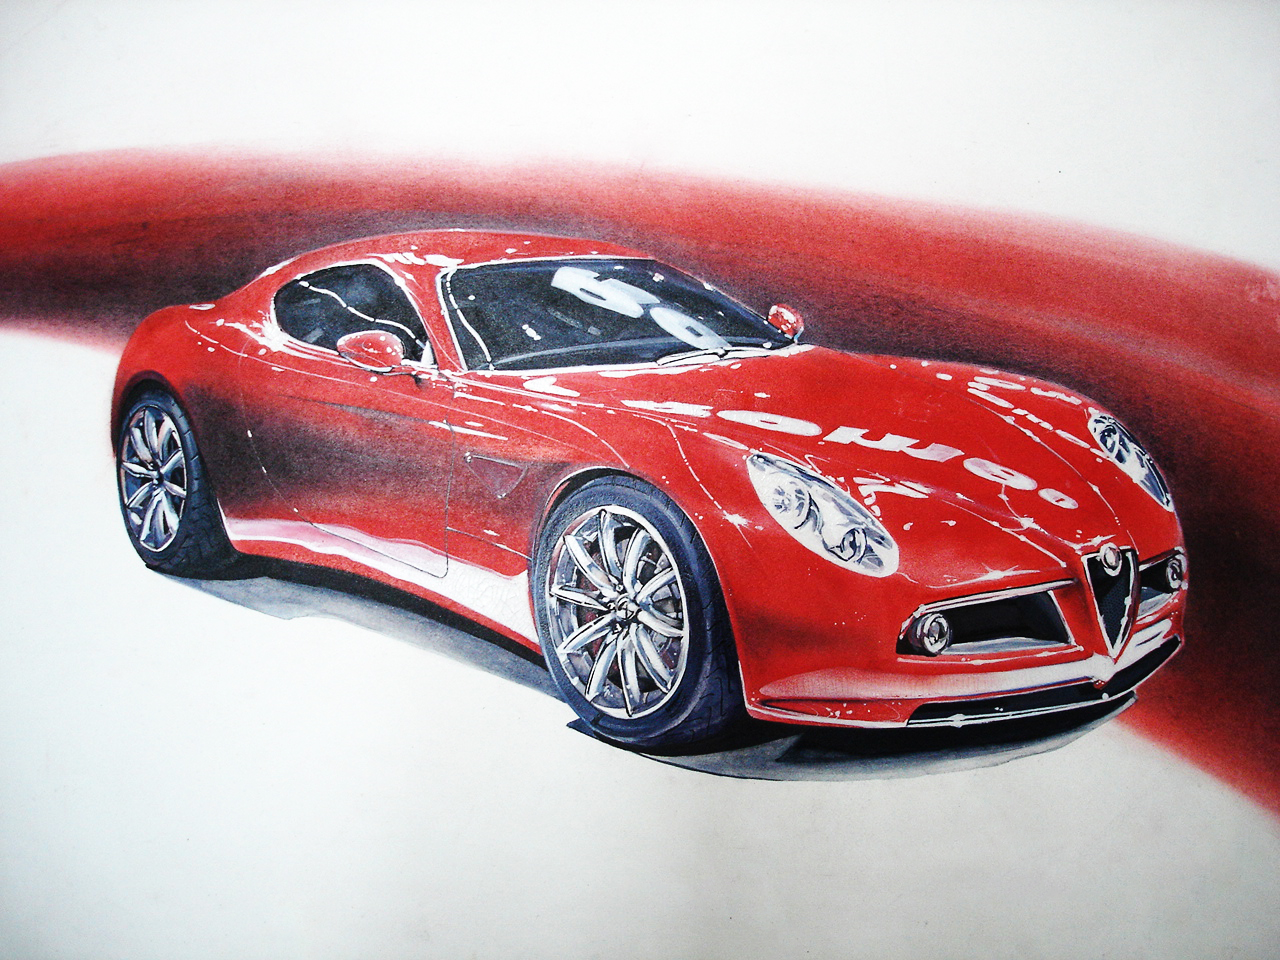 一些概念、创意汽车手绘草图分享给大家